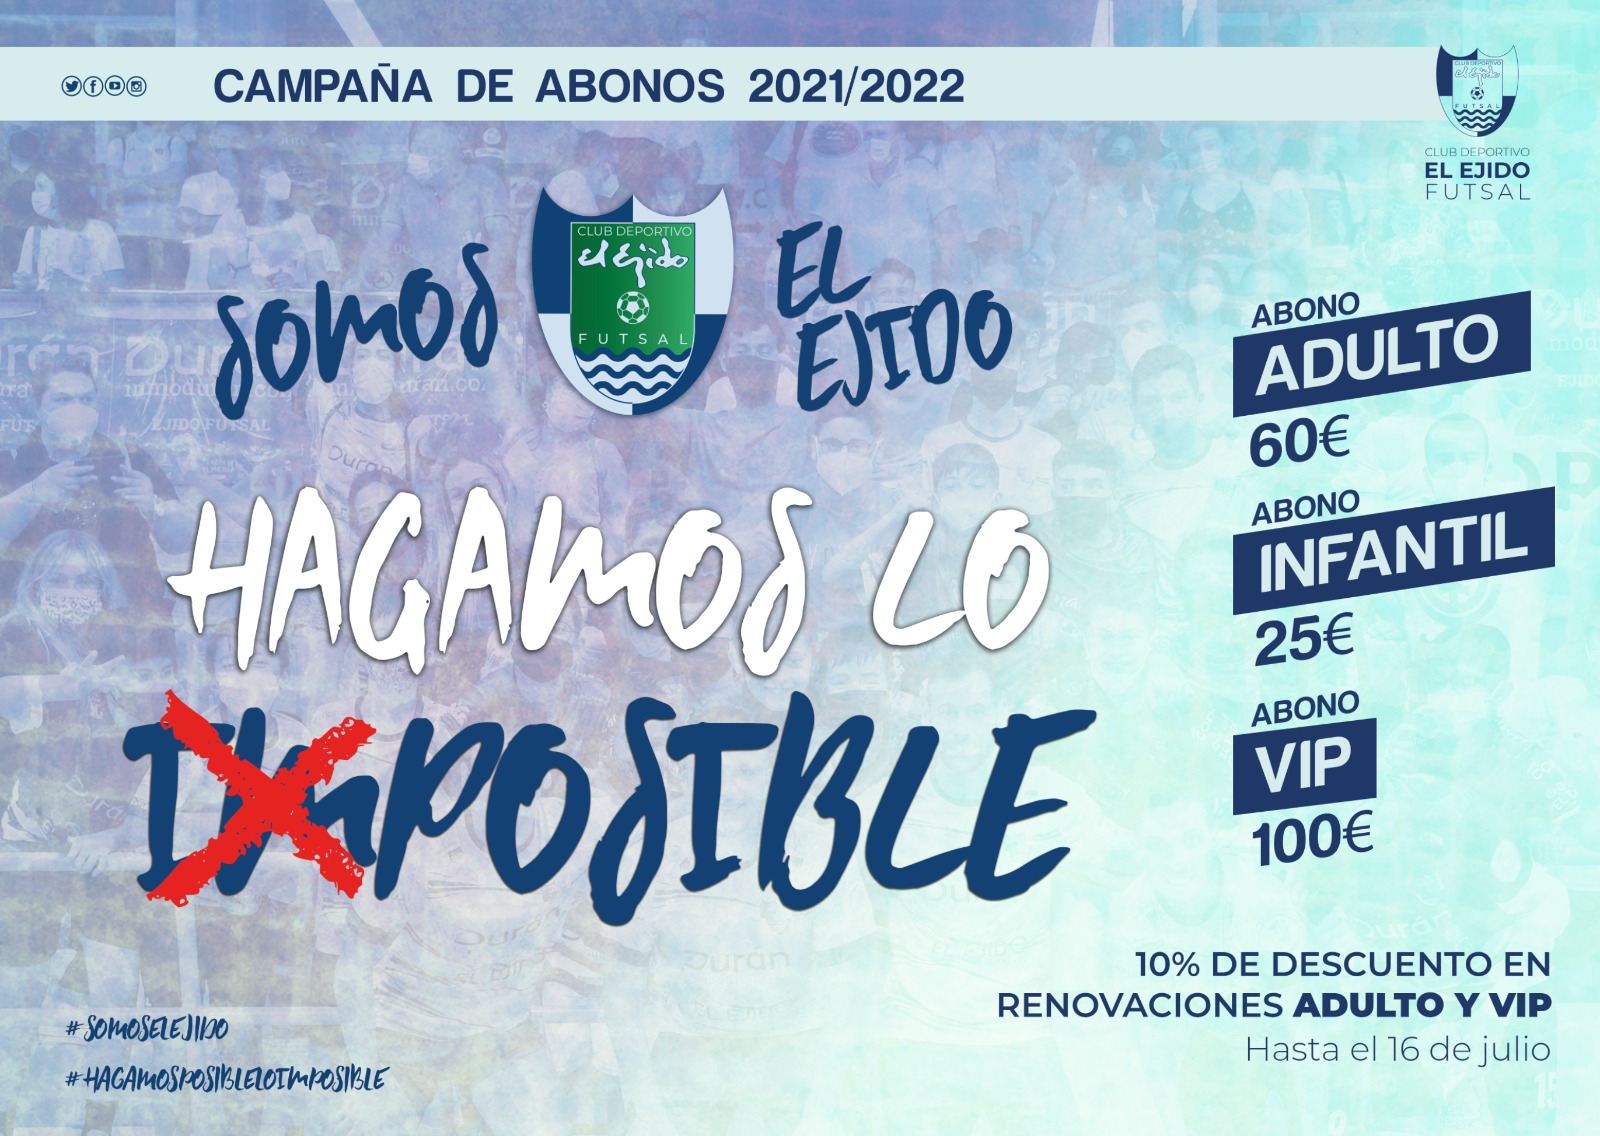 CD El Ejido Futsal Campaña de Abonos 2021